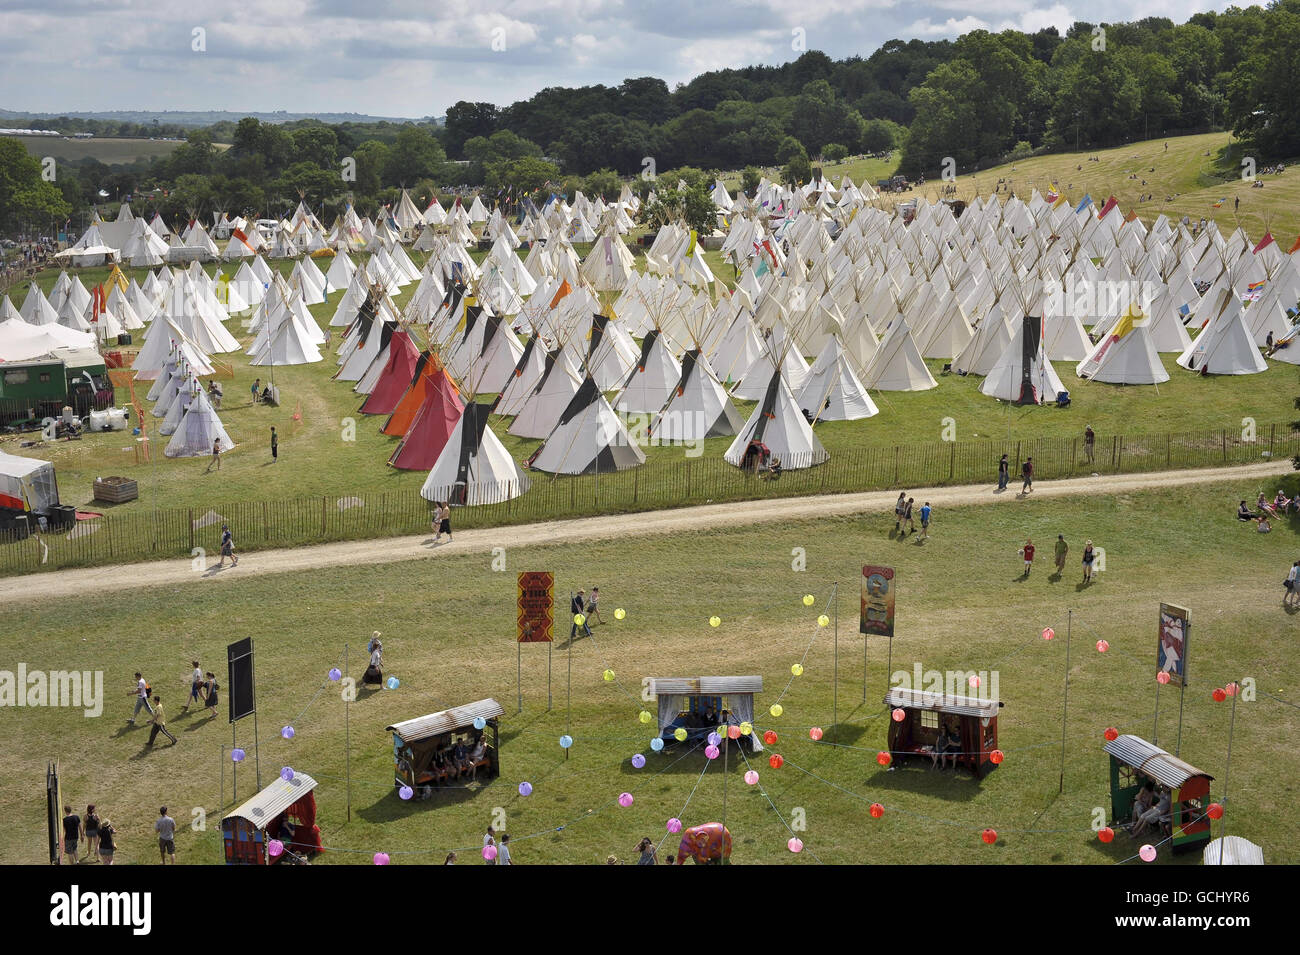 Una visione generale del campo di teepee il giorno in cui la musica inizia al Festival di Glastonbury 2010, il 40° anniversario dell'evento, presso Worthy Farm, Pilton, Somerset. Foto Stock